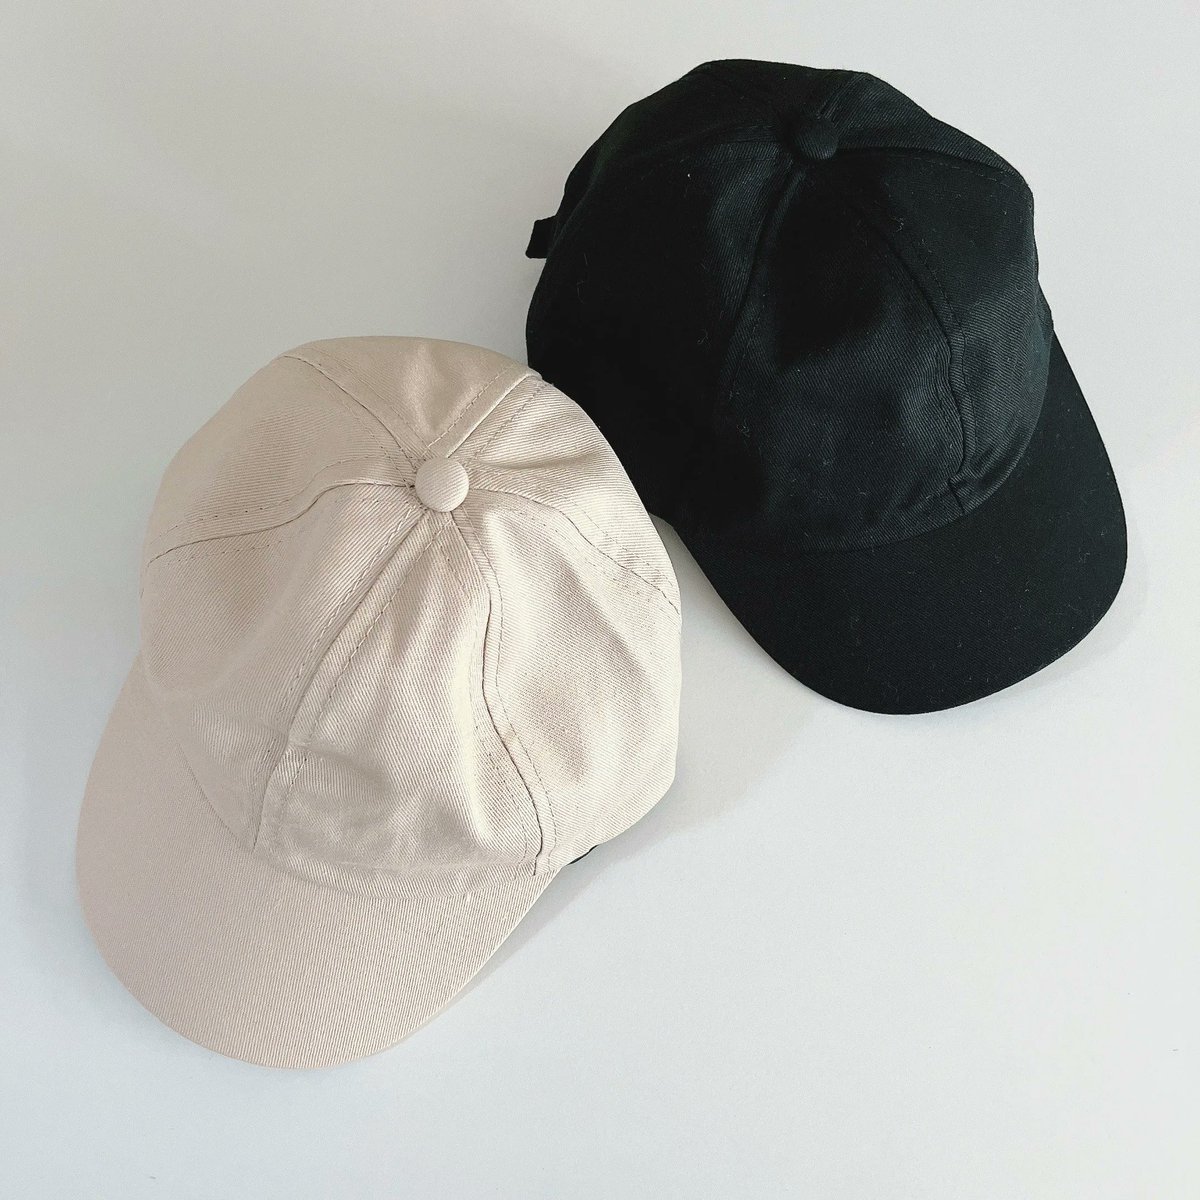 「【コスパ】本当に220円でいいの…?ダイソーの「無印にありそうな帽子」可愛すぎて」|BuzzFeed Japanのイラスト